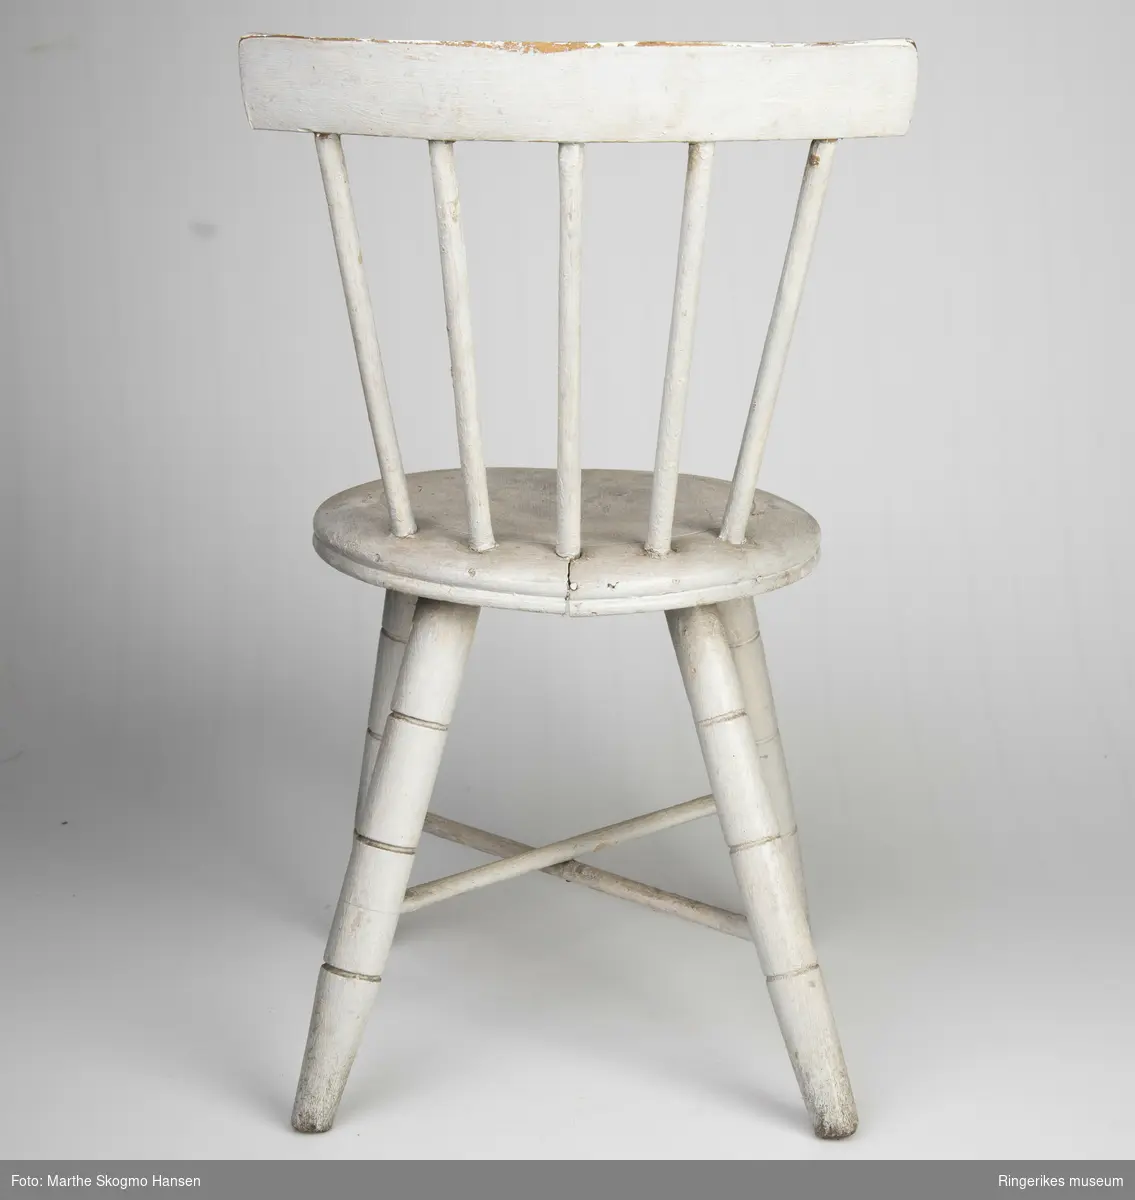 Stolen er veldig pent laget, den ser akkurat ut som en stol for voksne, bortsett fra størrelsen. Det er en typisk pinnestol, med rundt sete. Beina har tre dekorative furer hver, 8,5 cm, 16 cm og 22 cm opp fra gulvet. Det er to sarger i kryss. Ryggen består av 5 pinner på 20.5 cm og et smalt ryggbrett på toppen, 4,5 cm bredt. Stolen er malt lys grå, men fargen er slitt vekk noen steder, av og til ned til den hvite grunningen, andre ganger er det slitt ned til treverket.Det er en sprekk på tvers av setet, men ellers er stolen i god stand.